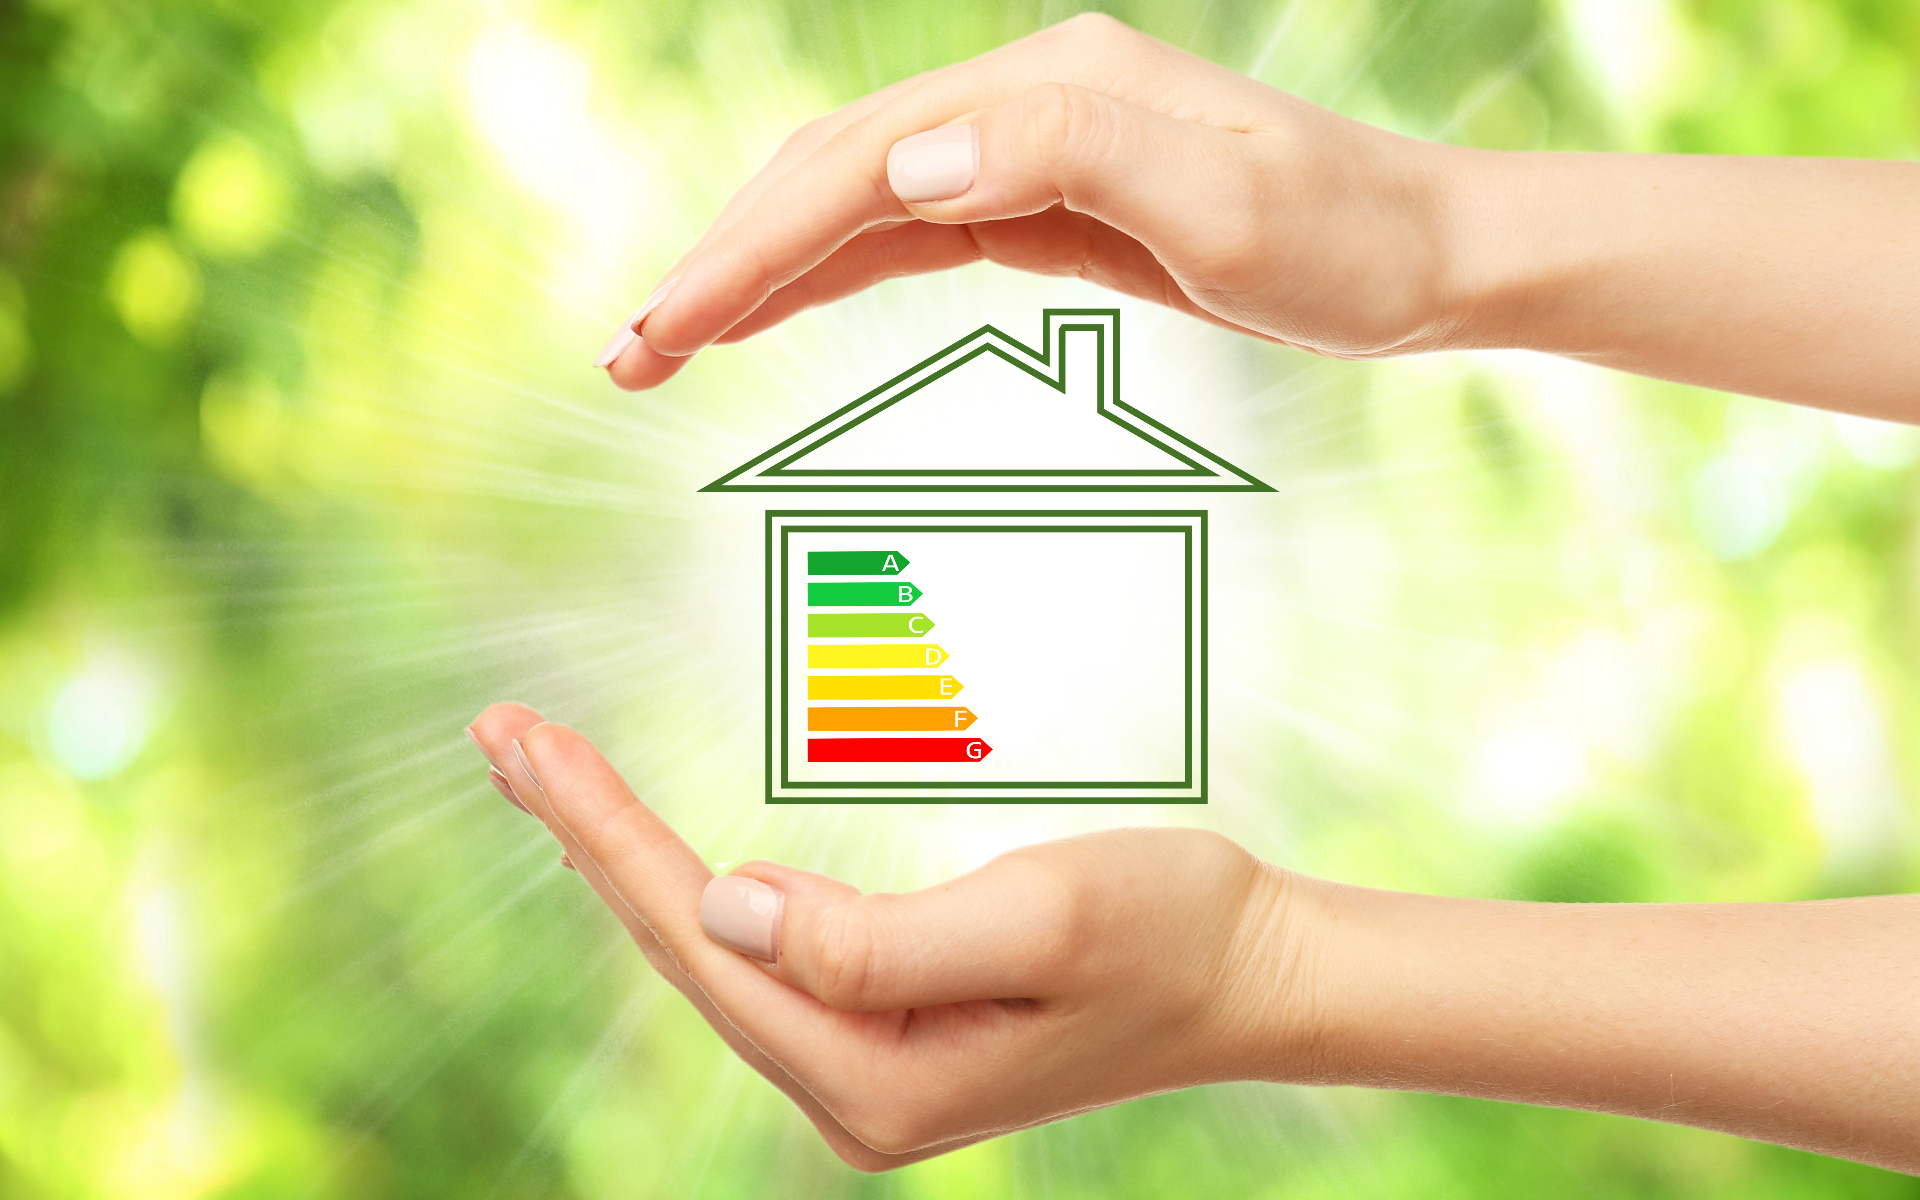 Несмотря на то что уже более половины граждан страны знают или что-то слышали об энергоэффективном жилье, реально разбираются в вопросе немногие&nbsp;&mdash; только 6% могут назвать класс энергоэффективности своего дома